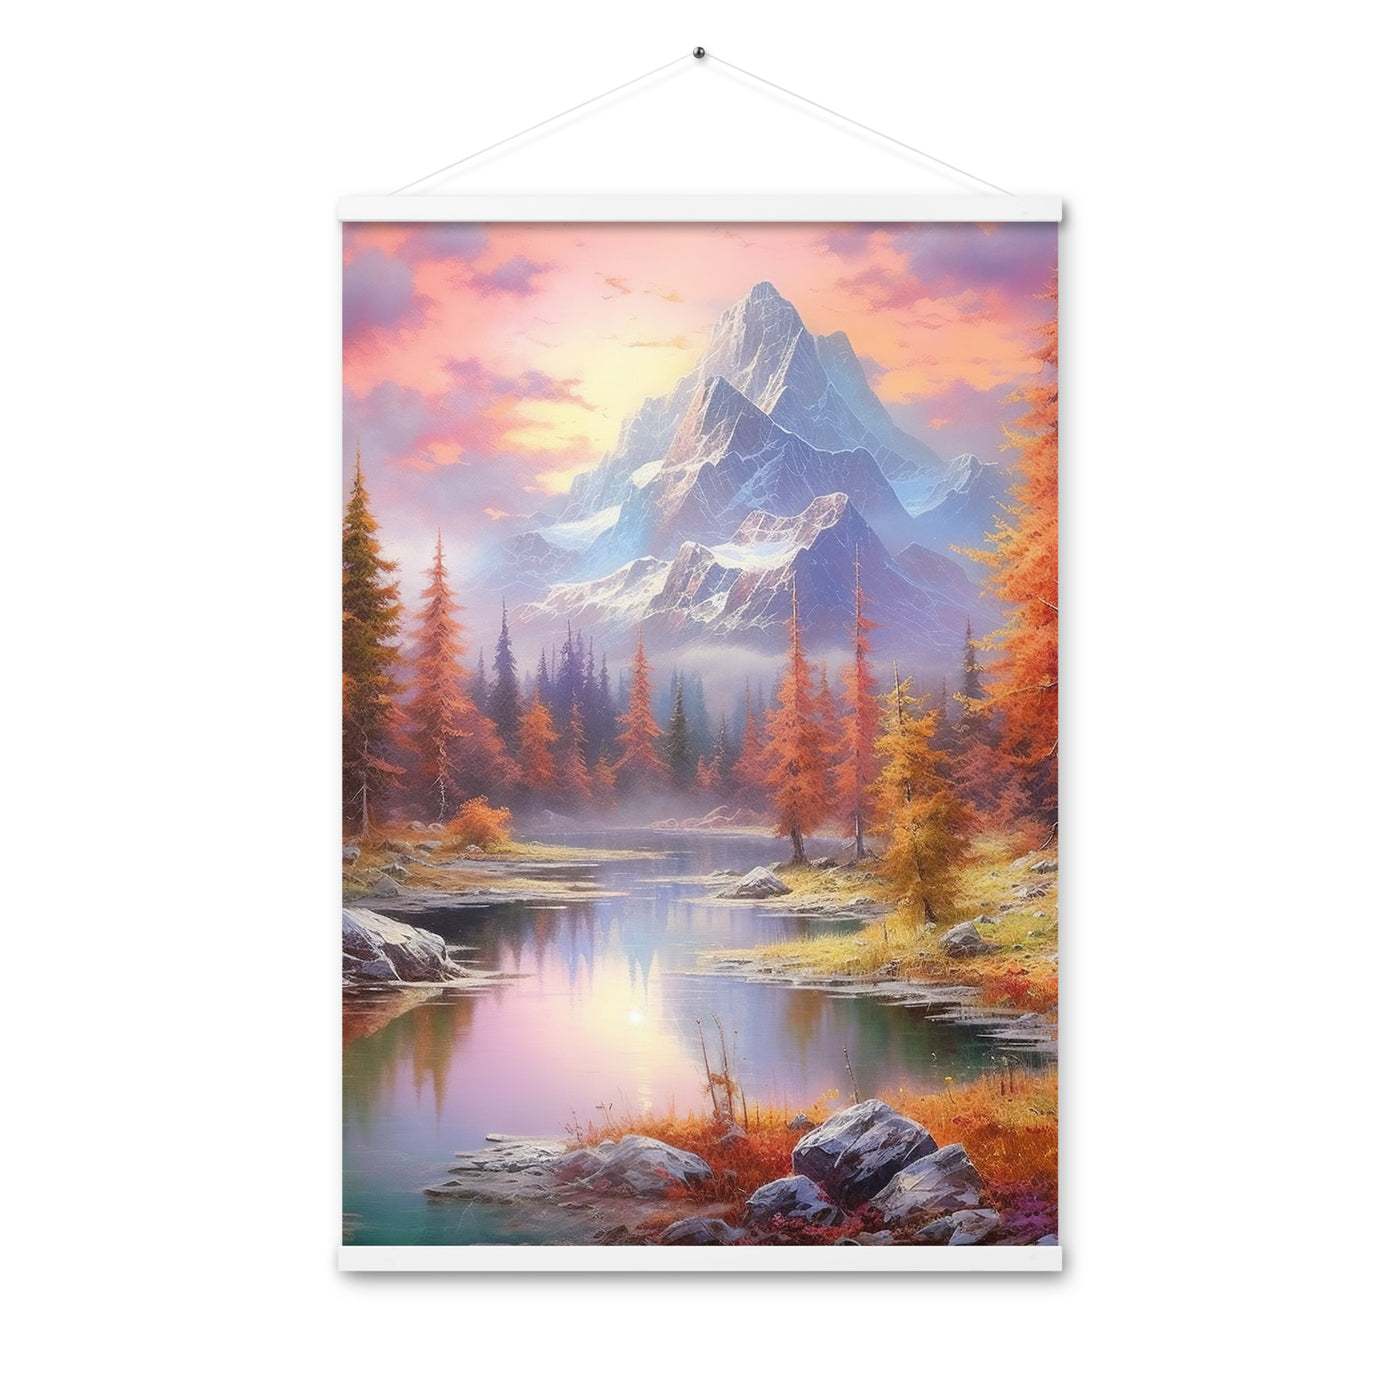 Landschaftsmalerei - Berge, Bäume, Bergsee und Herbstfarben - Premium Poster mit Aufhängung berge xxx 61 x 91.4 cm